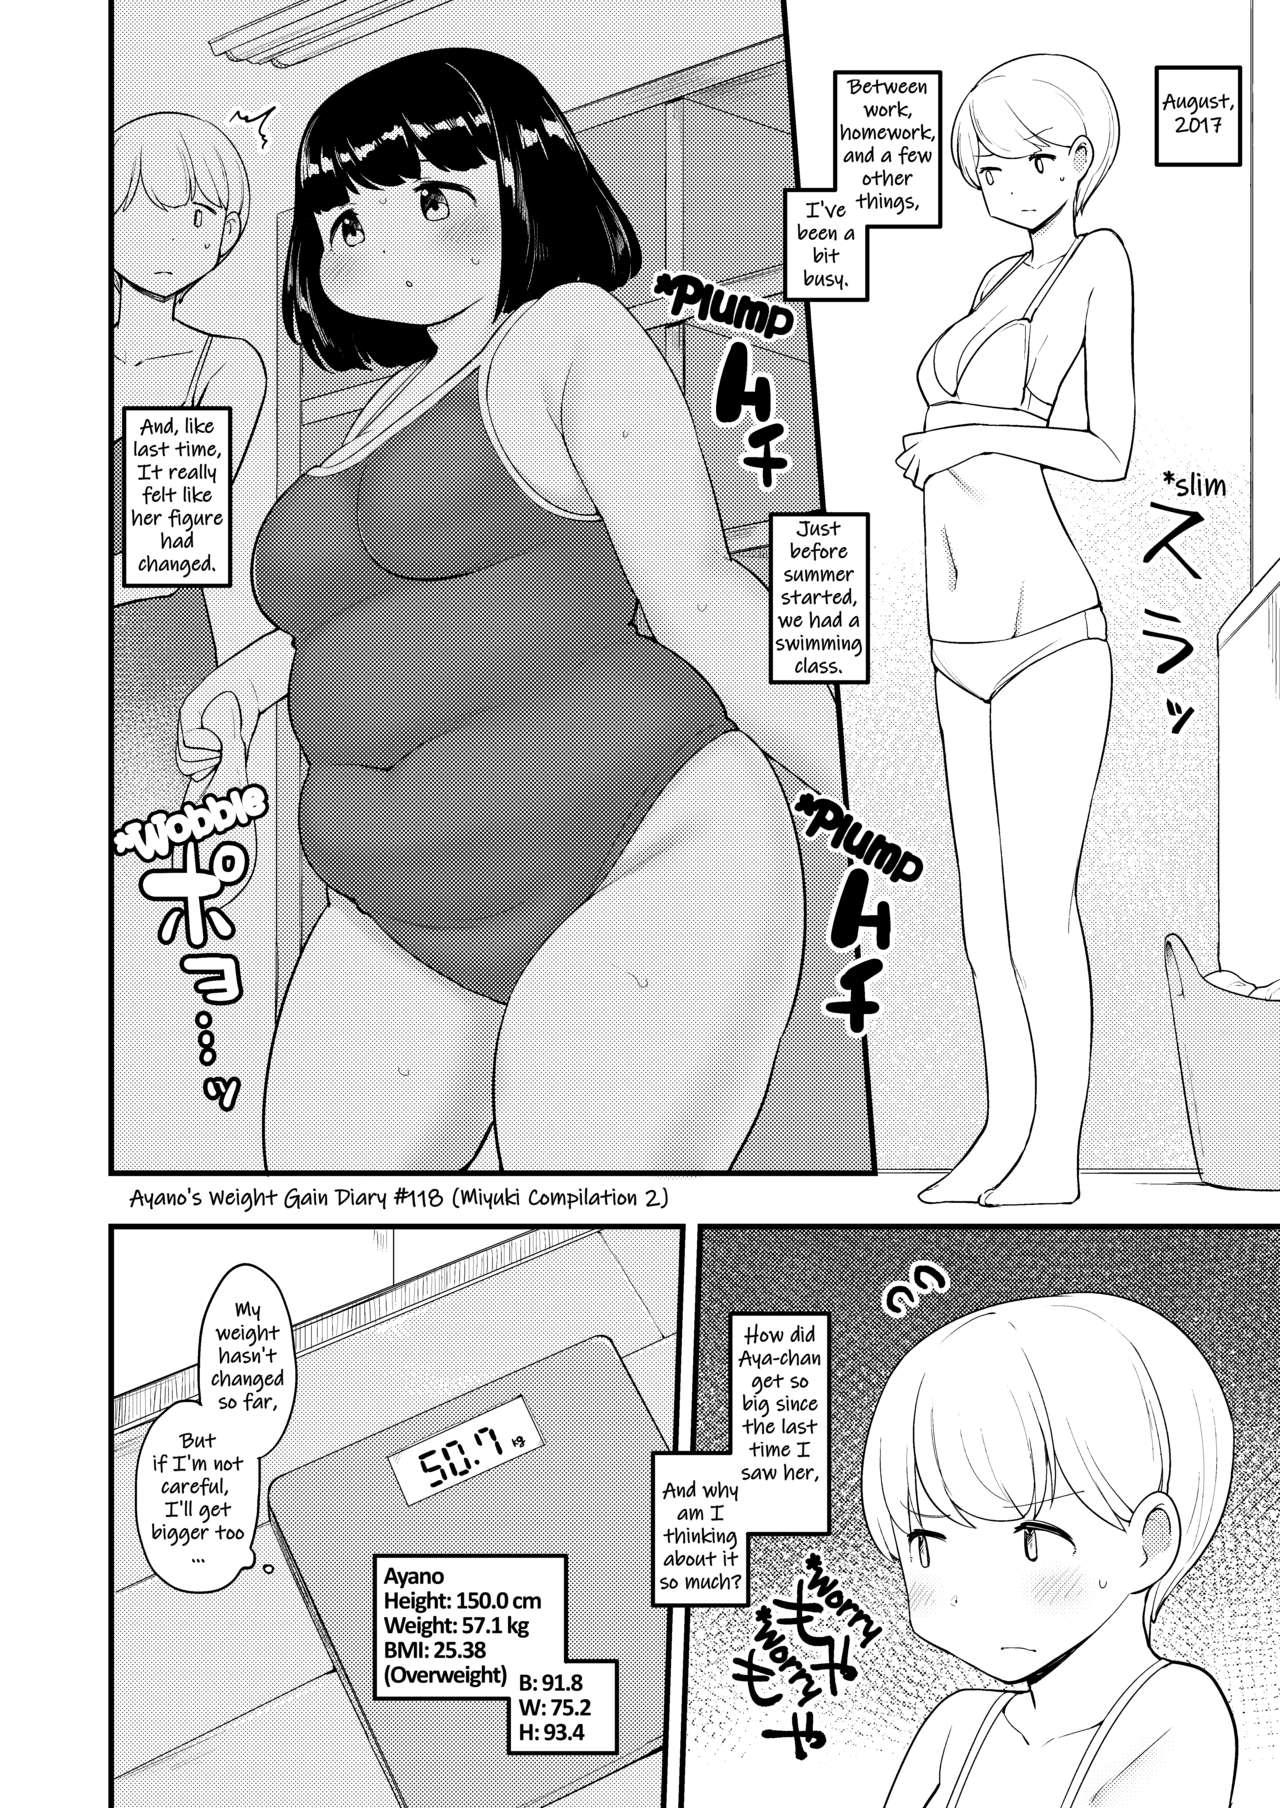 Ayano's Weight Gain Diary 118